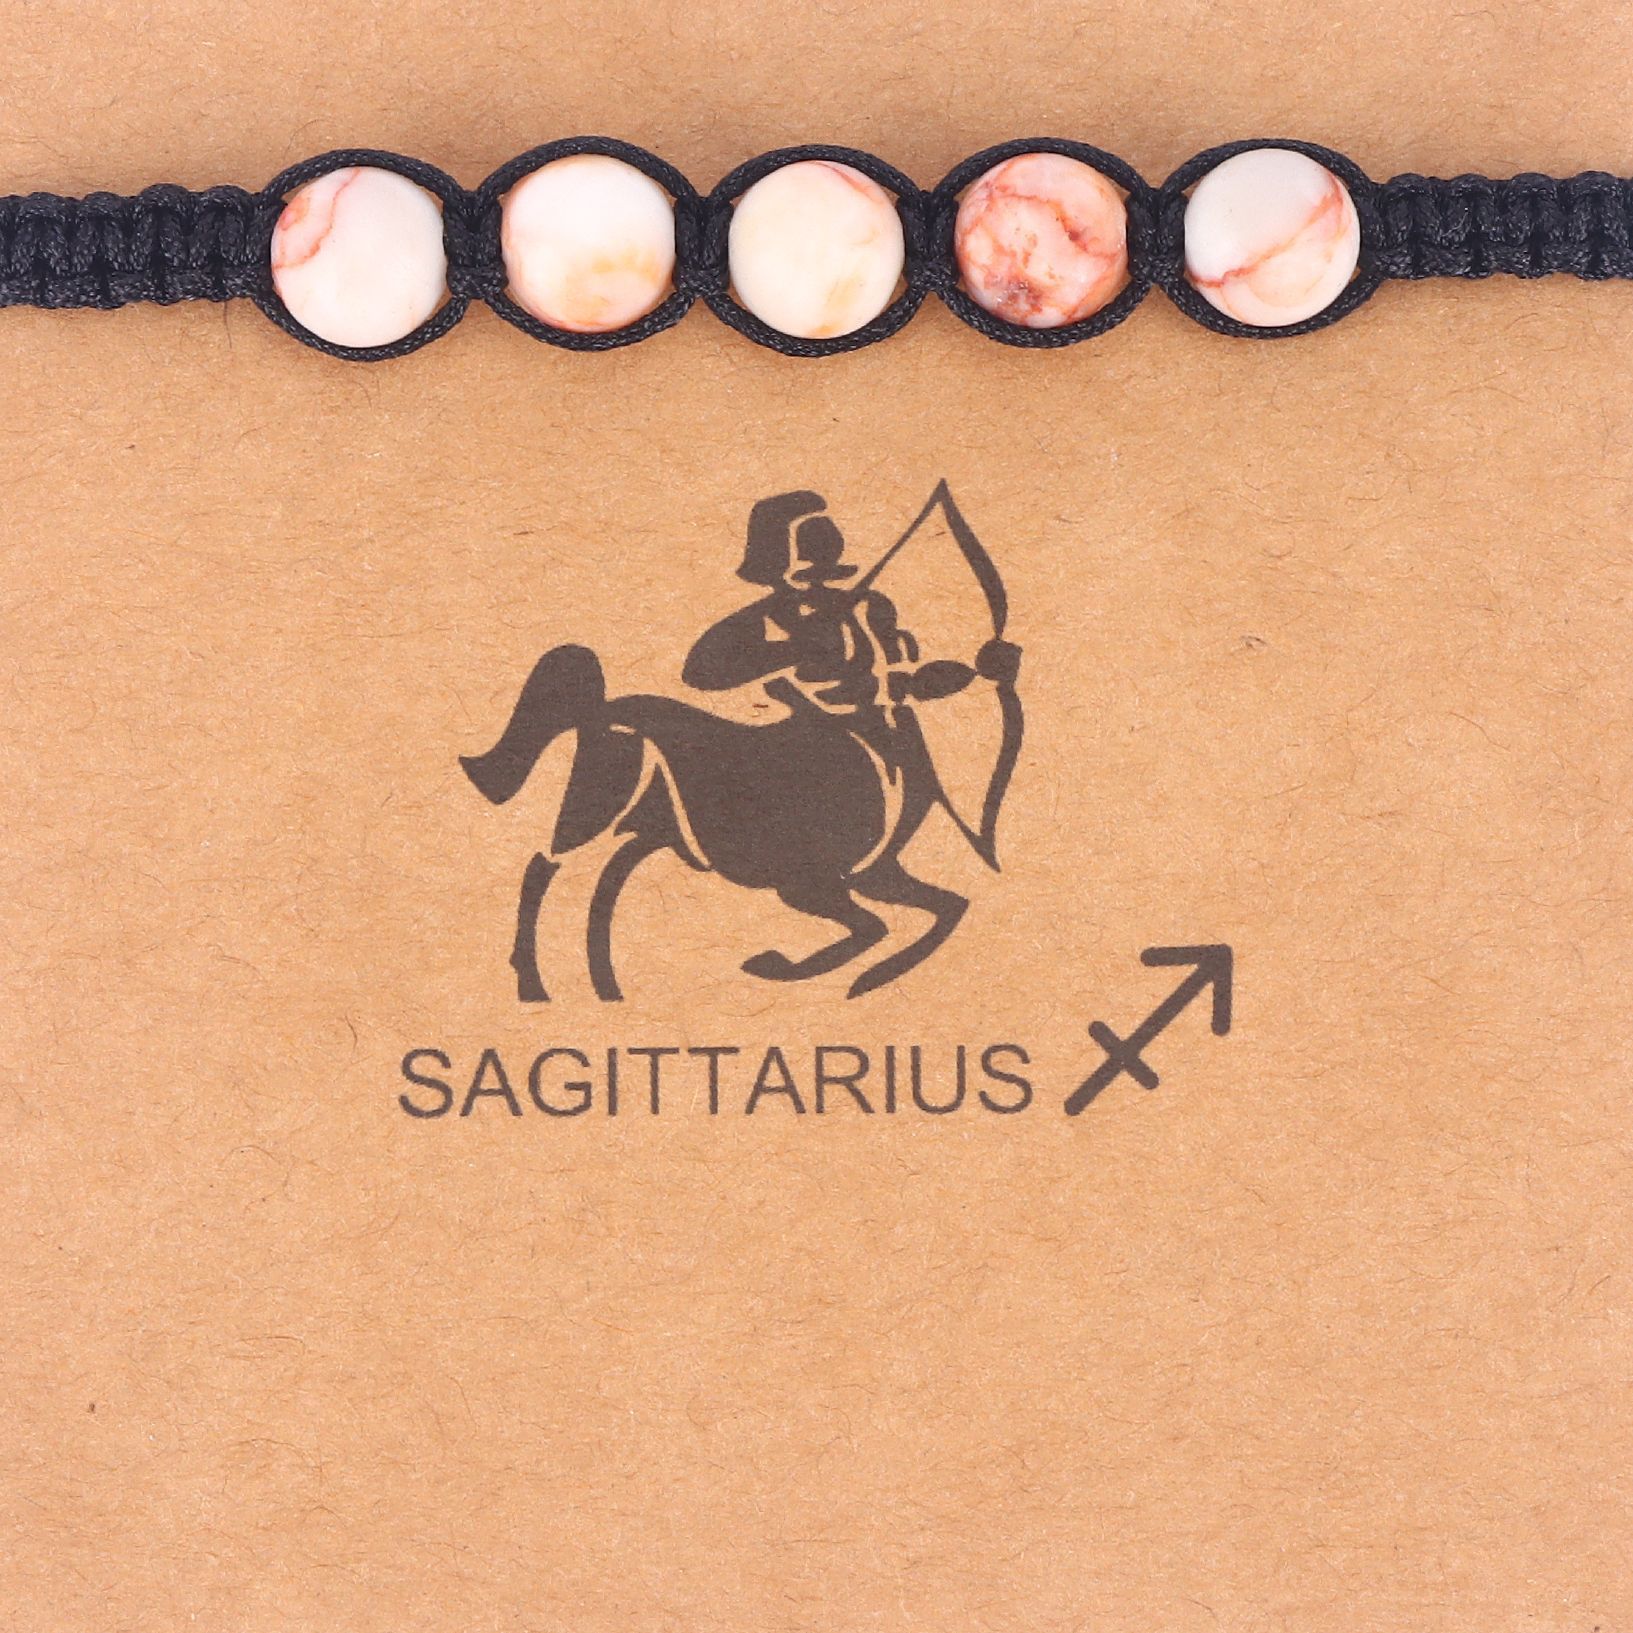 1:Sagittarius